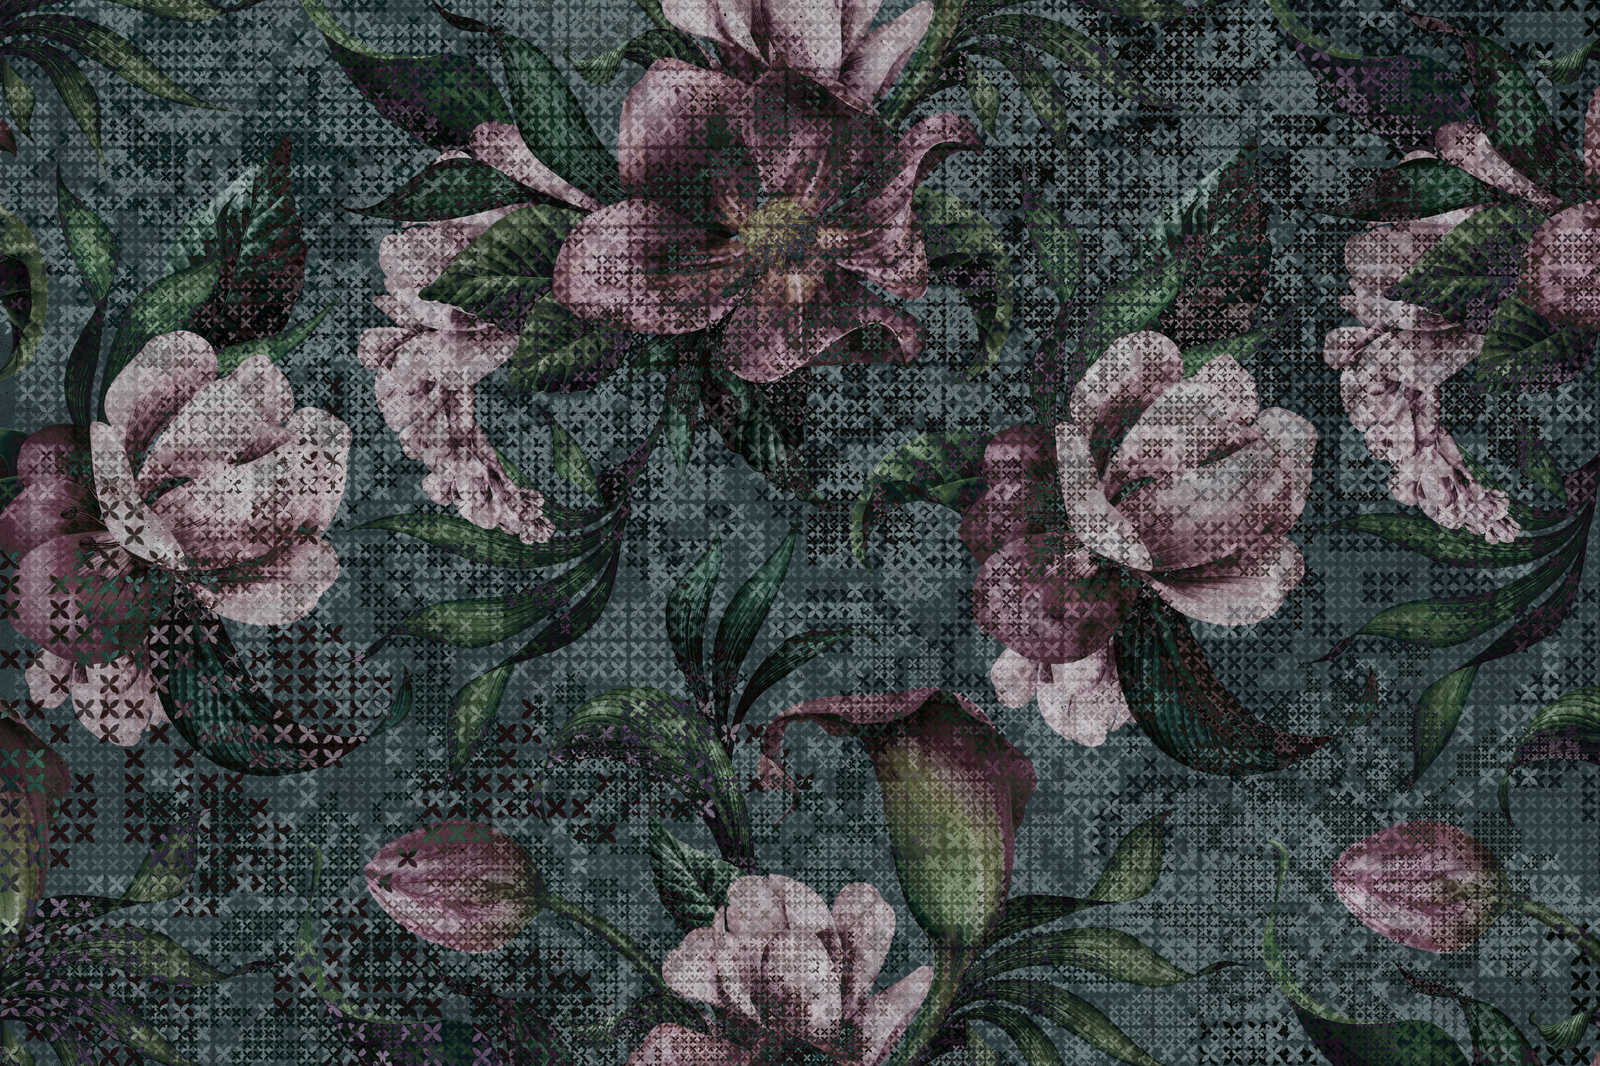             Blumen Leinwandbild Pixel Design – 0,90 m x 0,60 m
        